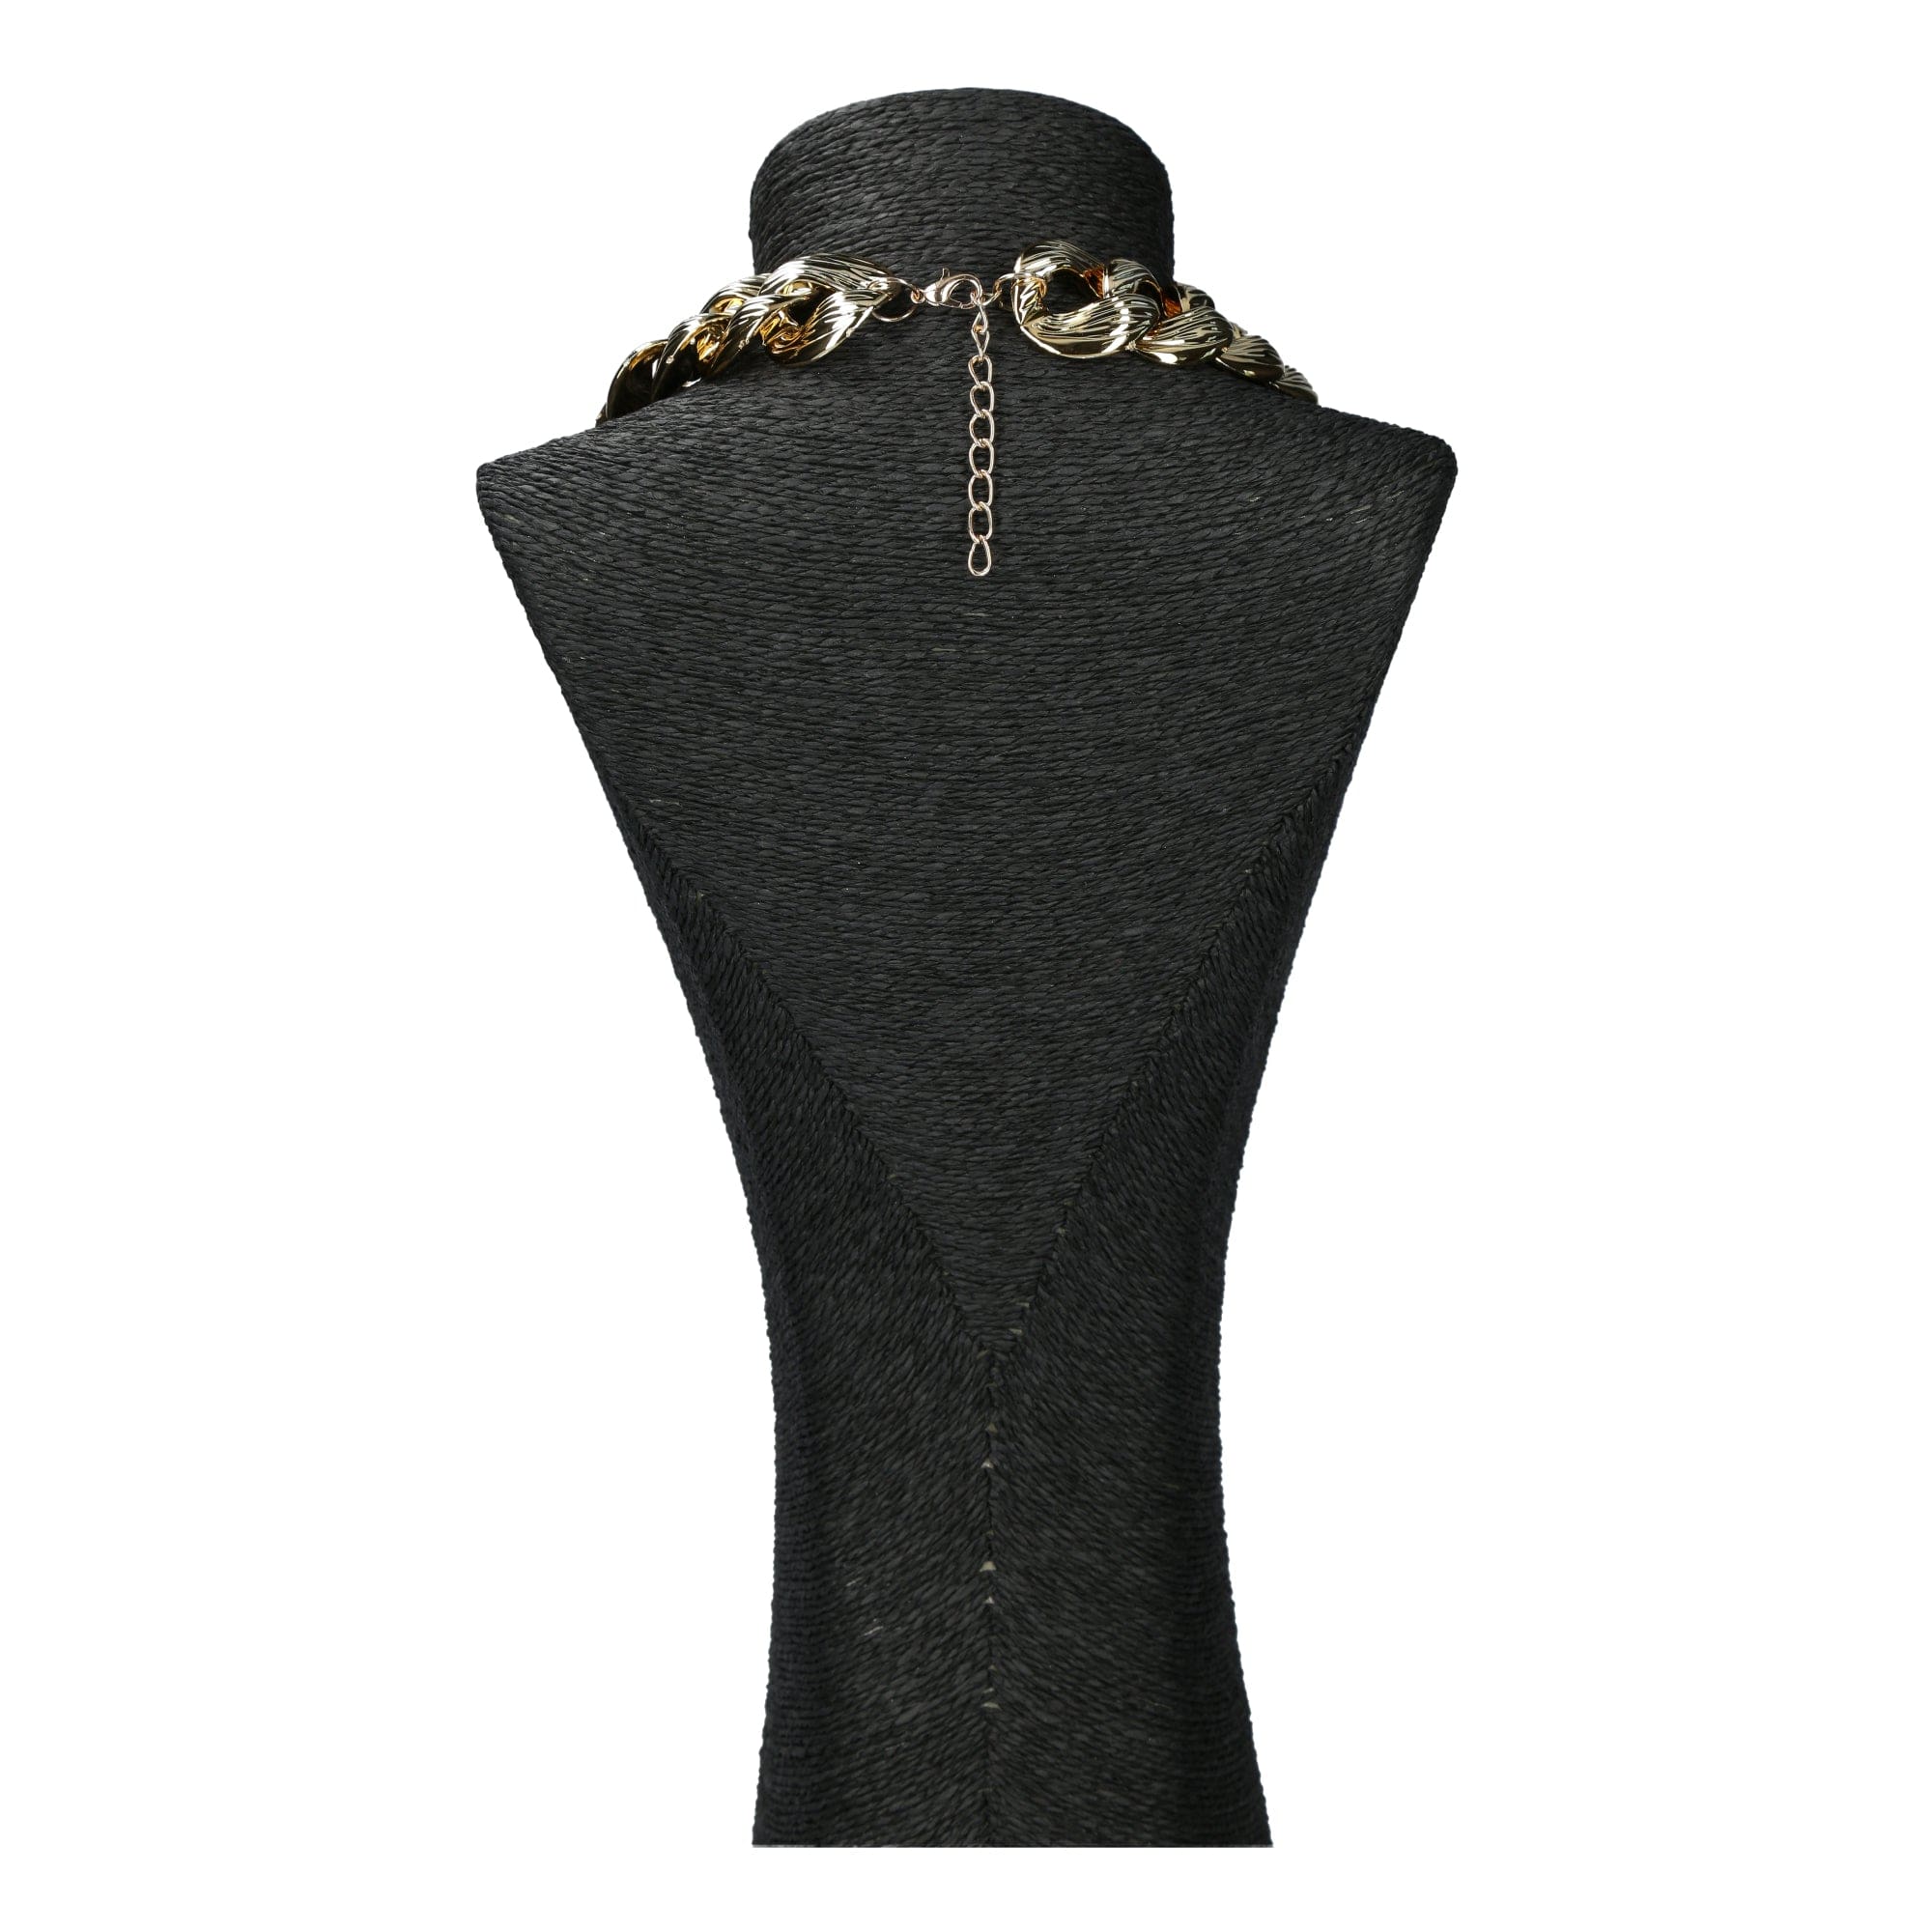 Jewel necklace Lerina - Necklace